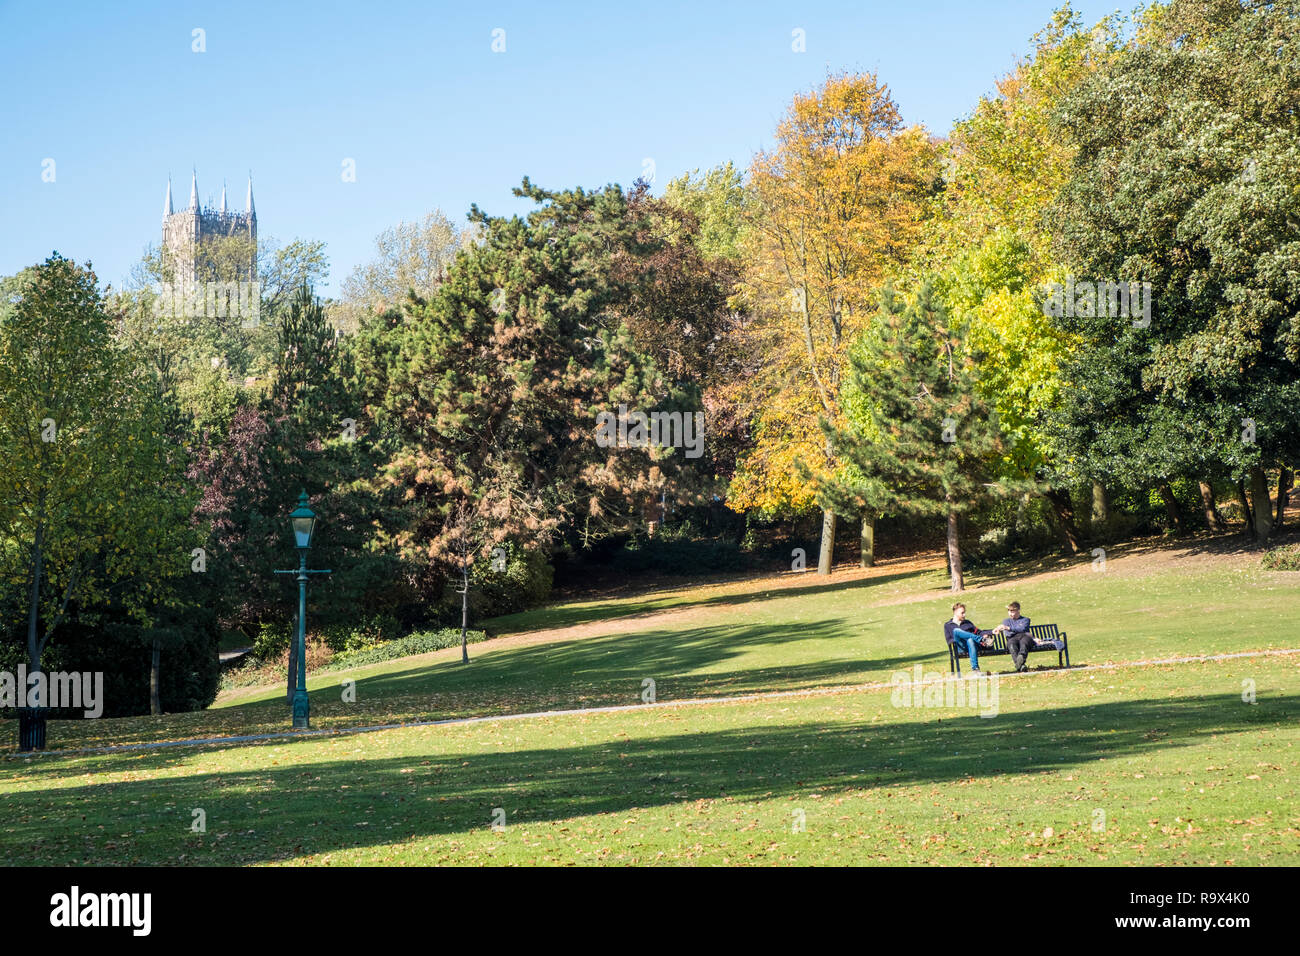 Menschen sitzen in einem Park mit Bäumen im Herbst Sonne umgeben. Lincoln Arboretum mit Lincoln Cathedral in der Ferne. Lincoln, England, Großbritannien Stockfoto